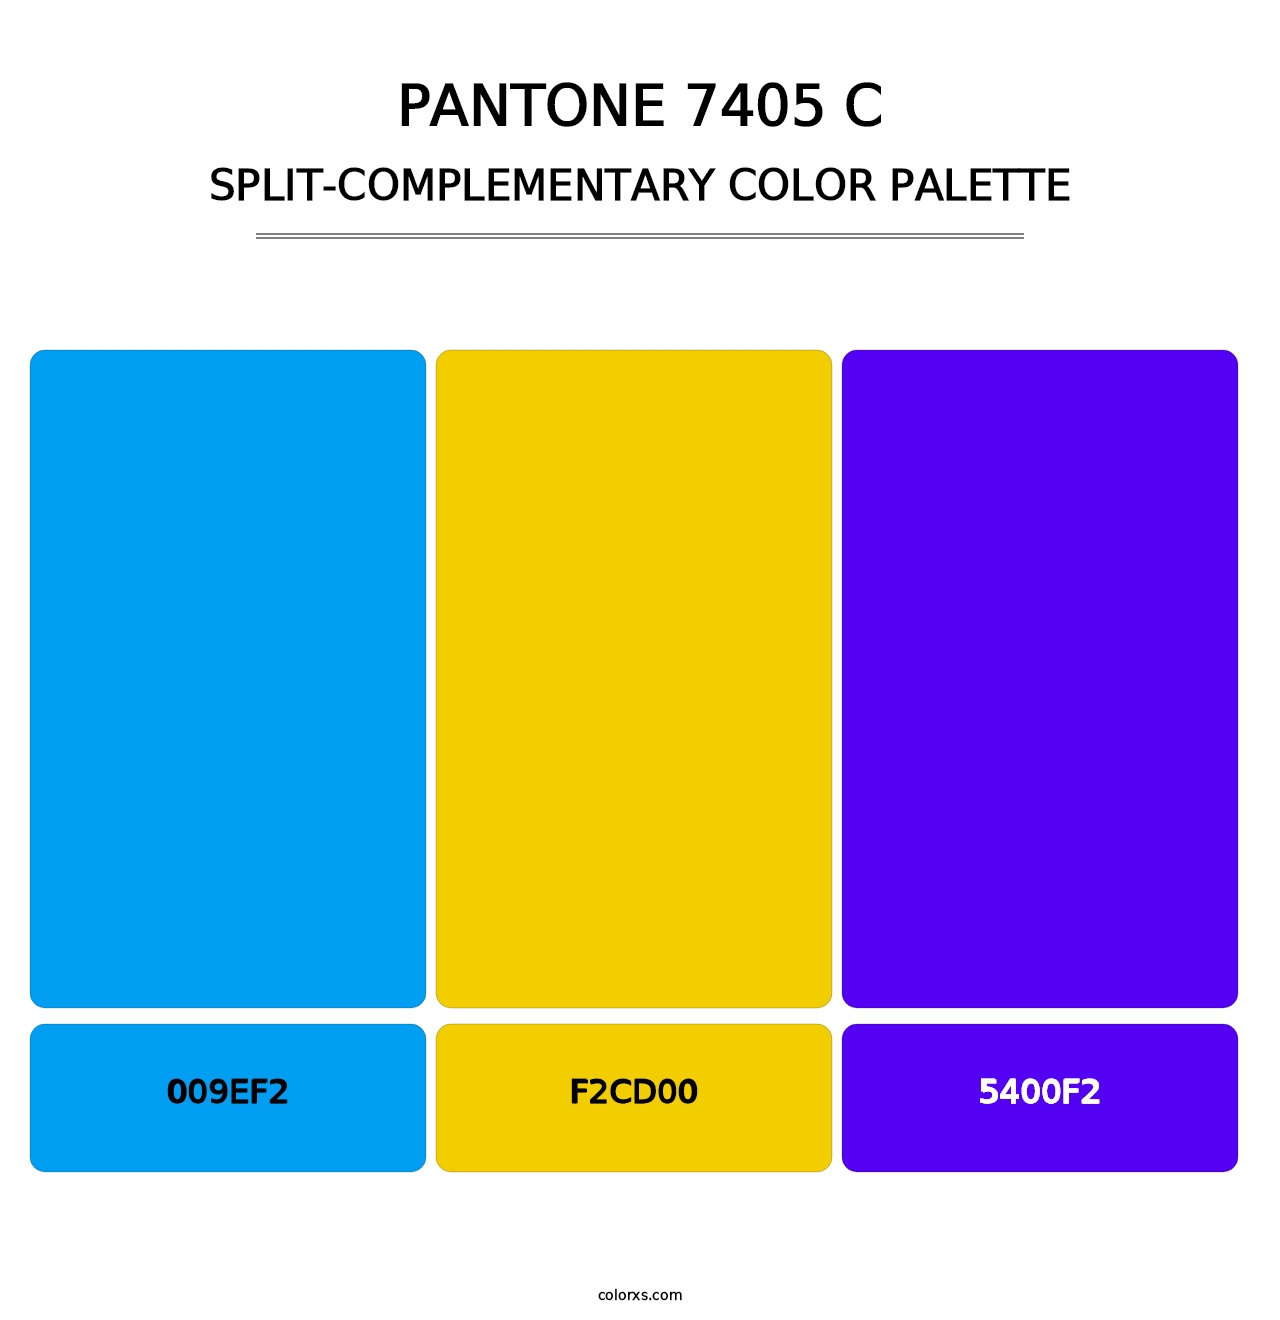 PANTONE 7405 C - Split-Complementary Color Palette